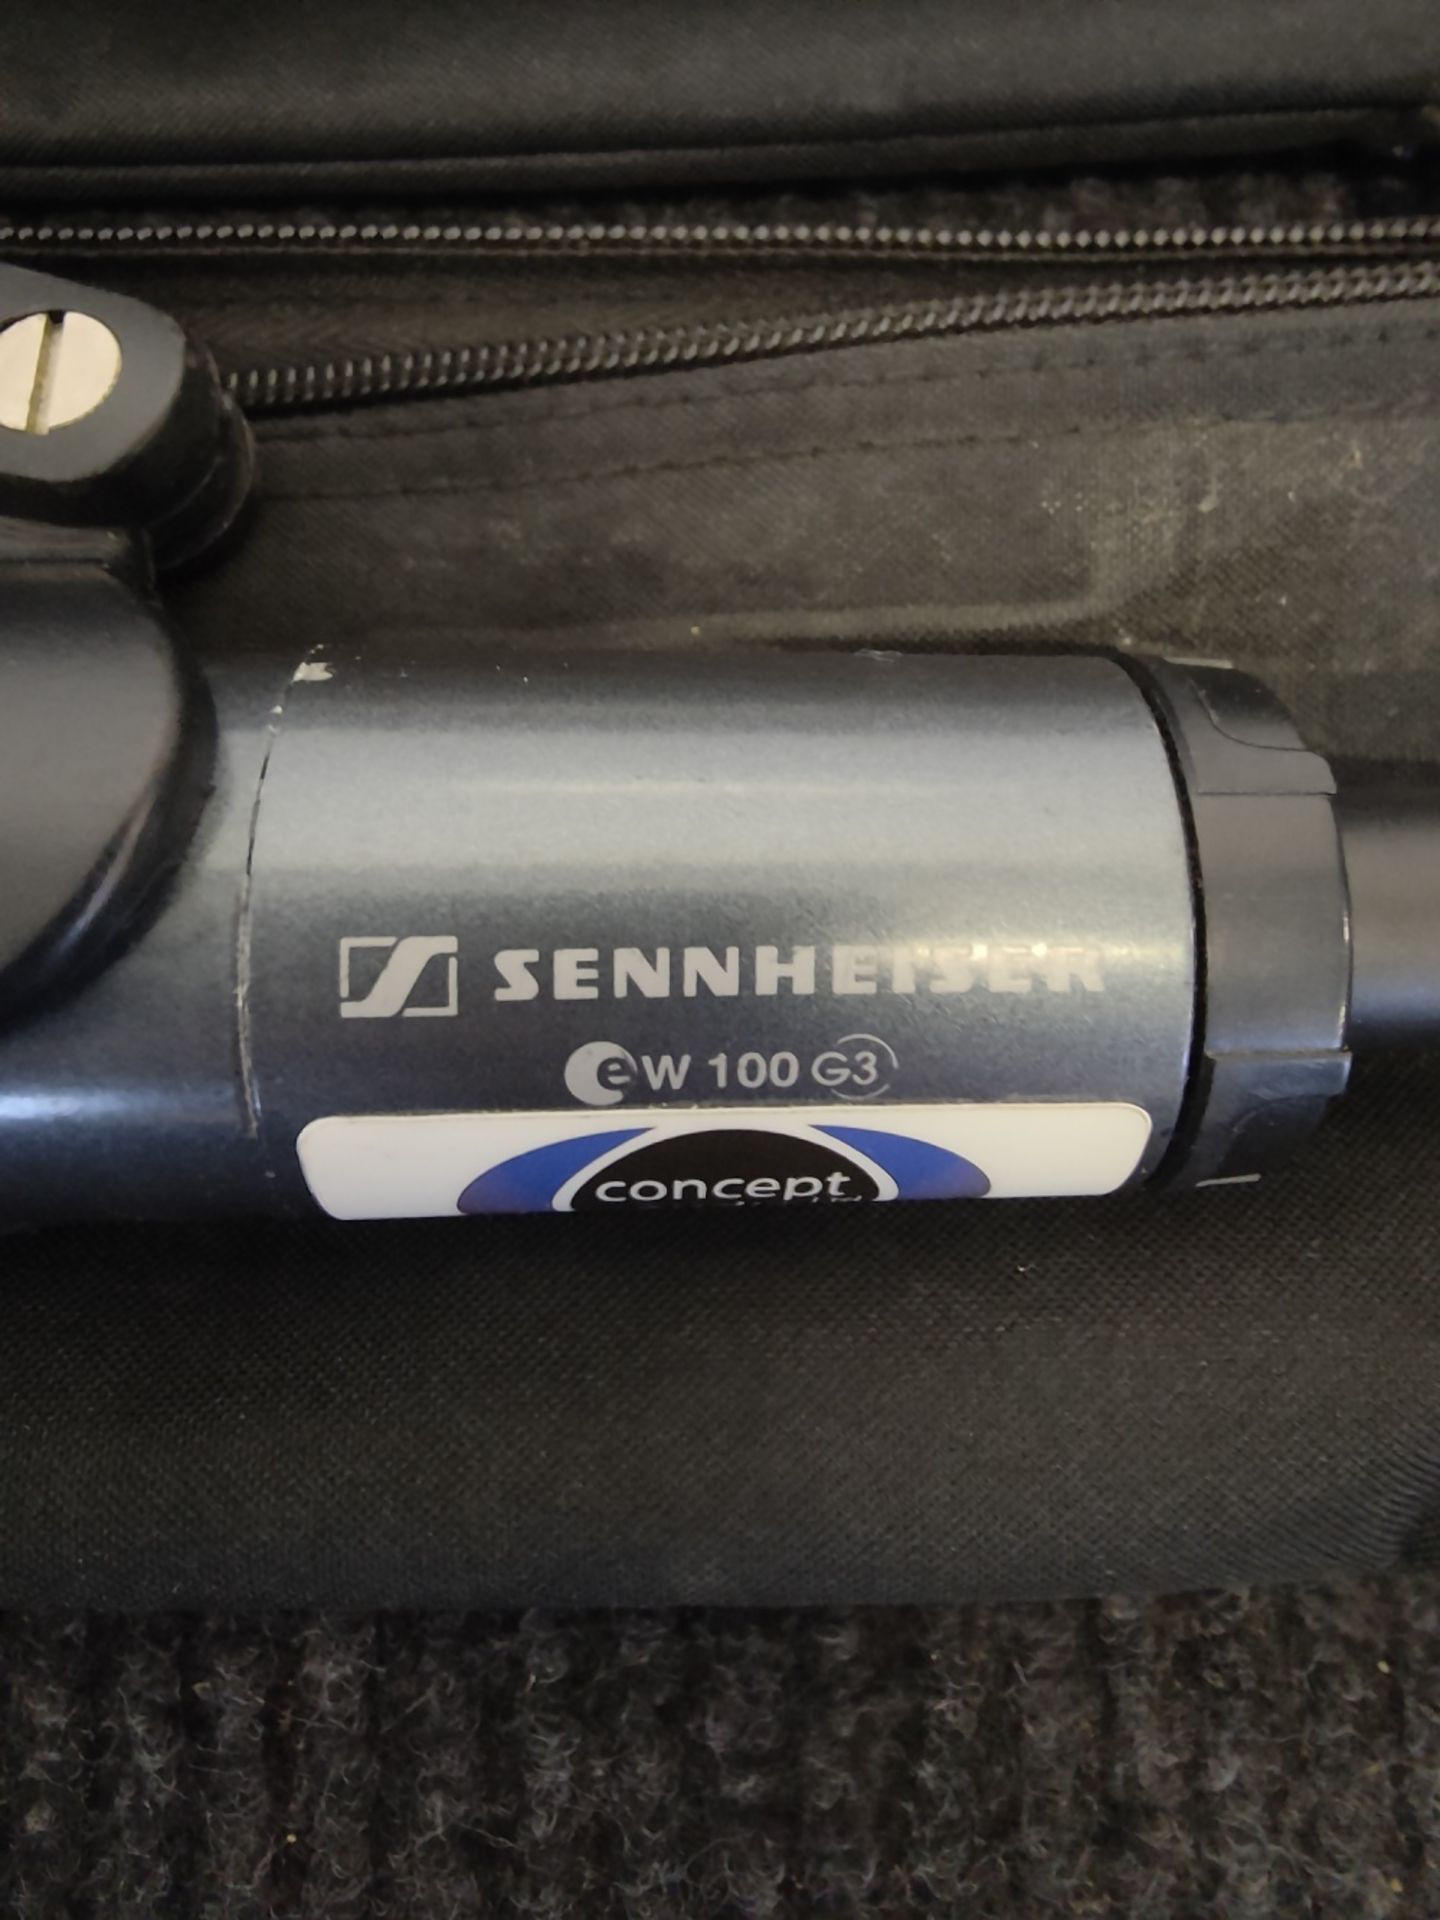 Sennheiser EW300/100 G3 2 Way Microphone Rack - Image 5 of 9